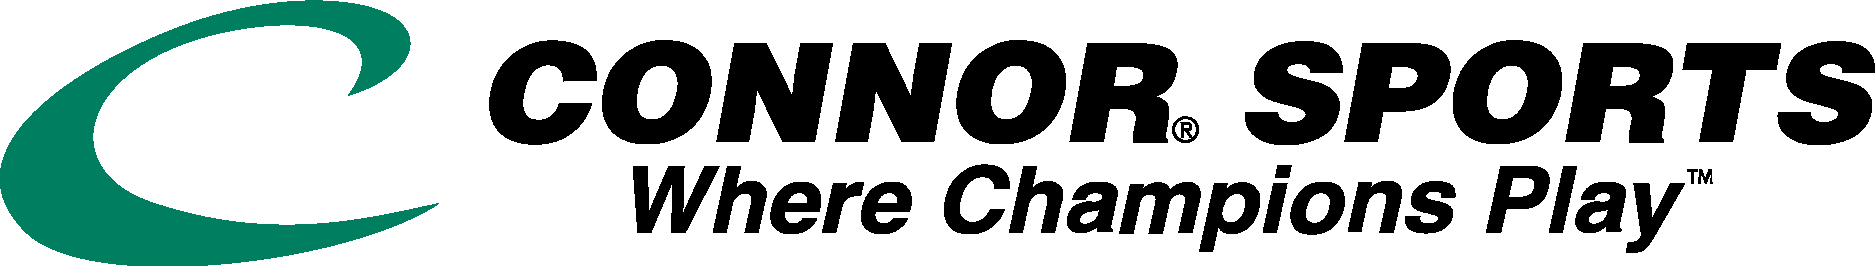 Connor Sports Logo Vector